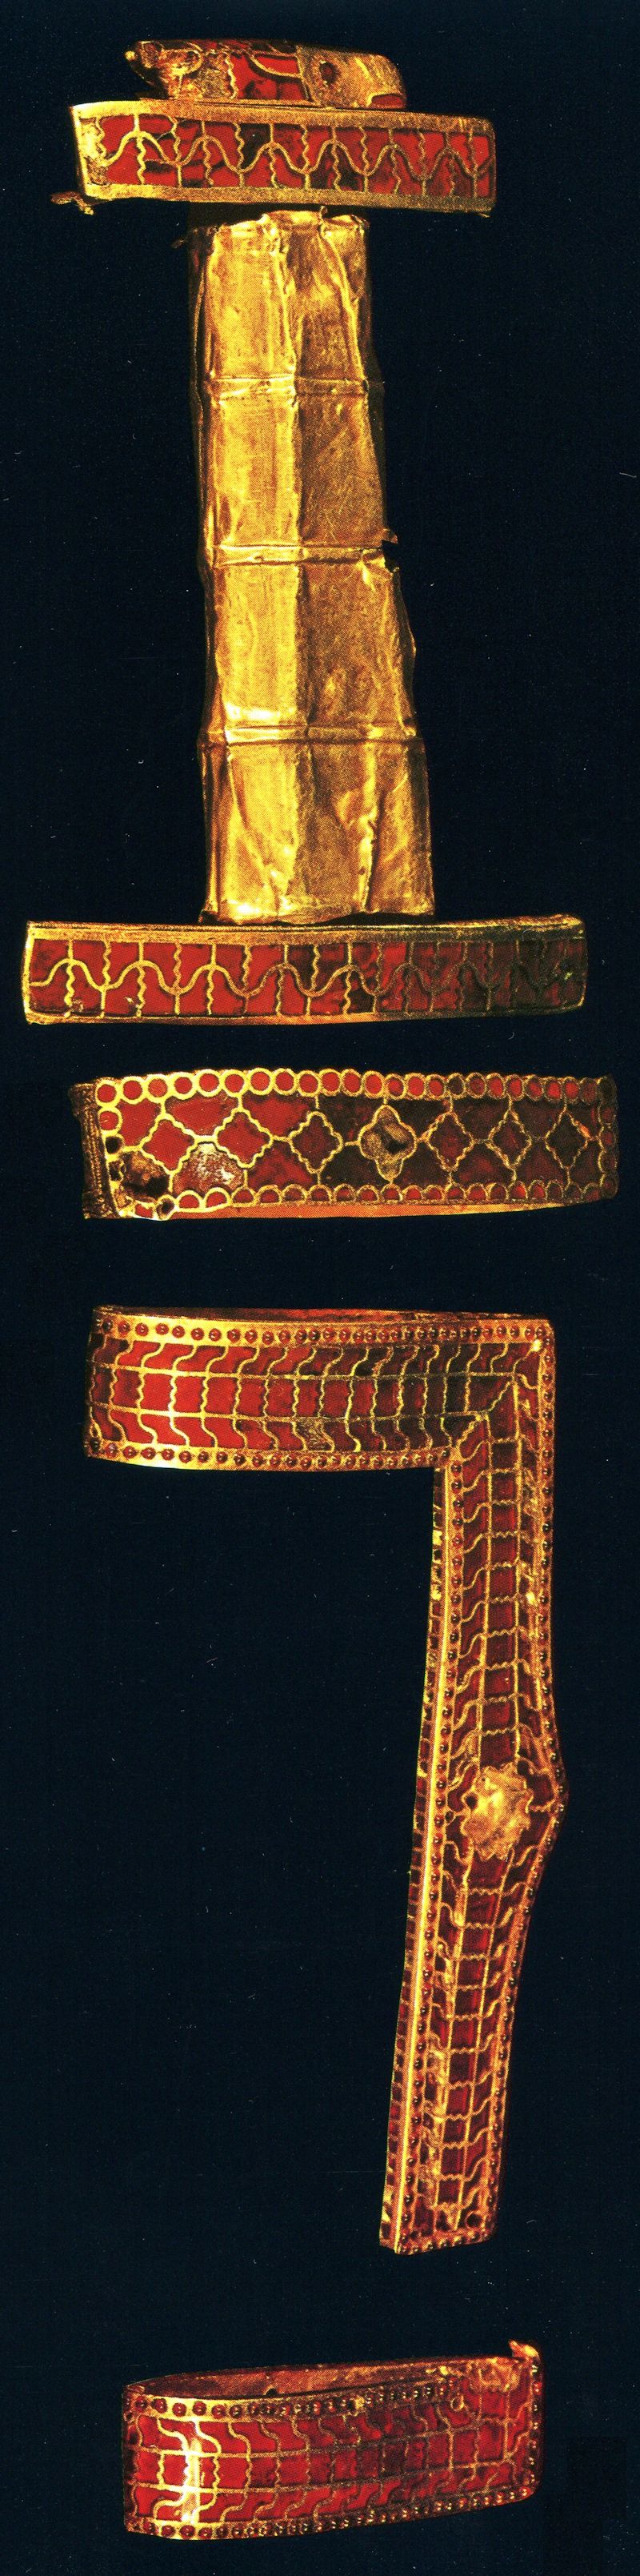 Meč zo zlata s granátmi panovníka Childerika I, súčasť kráľovských klenotov